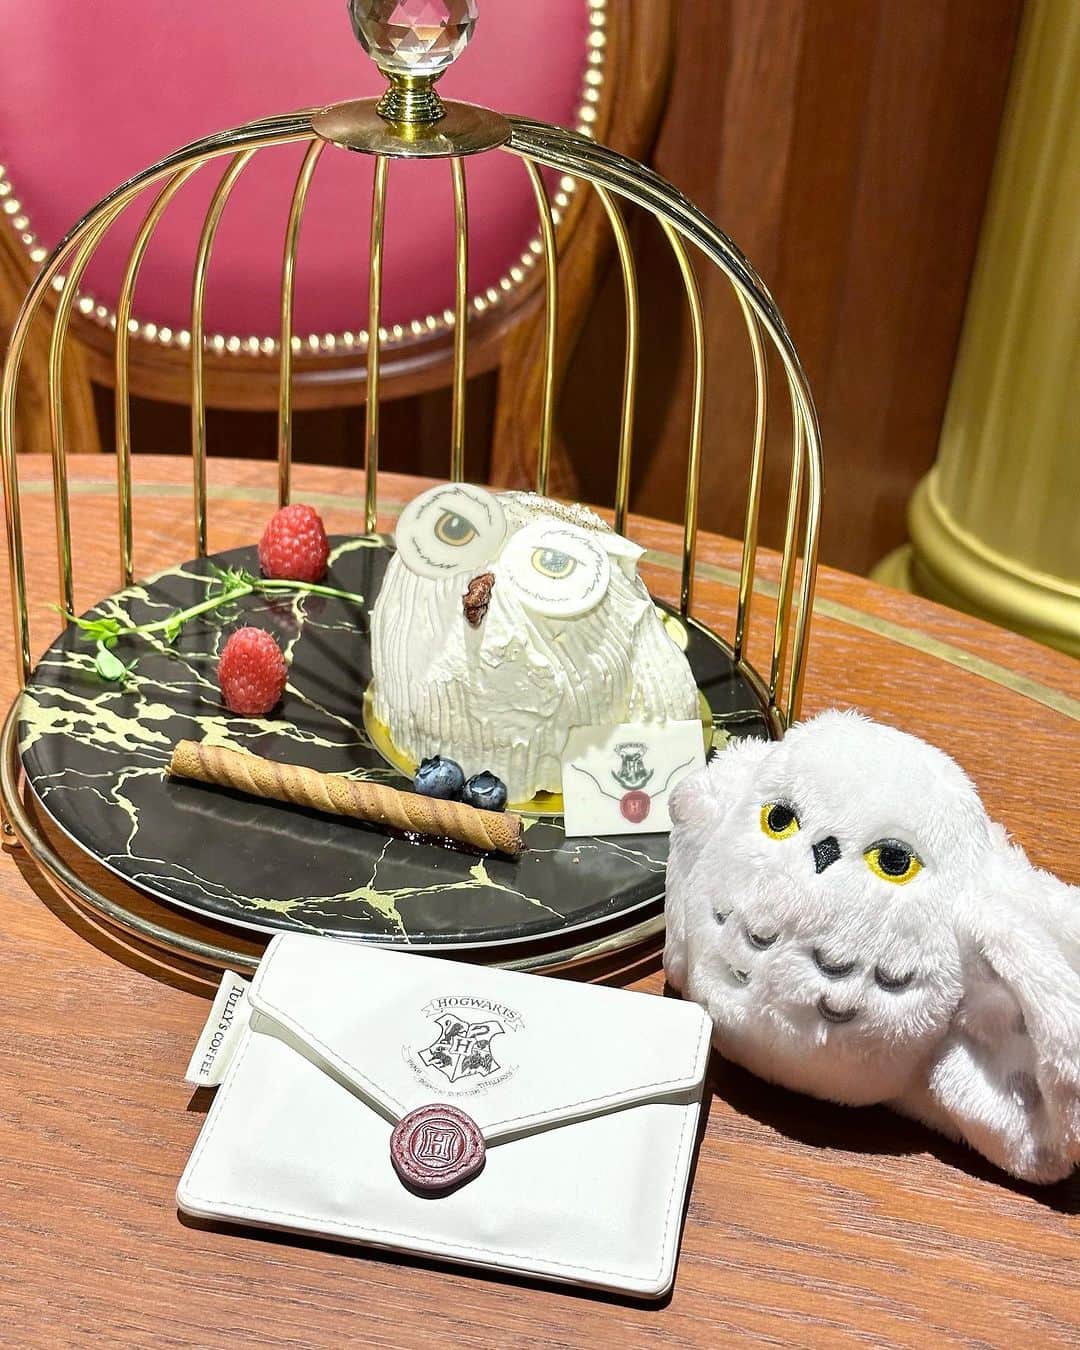 浅井麻里のインスタグラム：「🏰スタジオツアー東京⚡️ハリーポッター🏰 ⁡ ヘドウィグのケーキ♥️🦉 ⁡ ケーキとケーキに付いてる封筒(クッキー)に見立てて、 私物のヘドウィグスリーブと ホグワーツへの招待状パスケースを並べてみた♬ ⁡ 2枚目は、おふざけ💕🤣（笑） ⁡ 最後にヘドウィグケーキを切ってる動画あるよ✨🎥 ⁡ このケーキは、スタジオツアー東京の中間地点にある 「バックロットカフェ」で食べられます❤️🍰 ⁡ 🦉ヘドウィグケーキ ¥1,500 ストロベリー、バナナ、カスタードクリームを スポンジでサンドしたケーキ🍰 封筒のクッキー付き💌 ⁡ ⁡ 💫スタジオツアー東京 @wbtourtokyo 東京都練馬区春日町1-1-7 🚃豊島園駅から徒歩約2分 🎫チケット事前購入制 大人チケット ¥6,300  中人チケット ¥5,200 小人チケット ¥3,800 ＊デジタルガイドとガイドブックを含む、 スタジオツアーパッケージも別途あり ⁡ ⁡ #ハリーポッター #ハリポタツアー #ワーナーブラザーススタジオツアー東京 #スタジオツアー東京 #スタジオツアー #harrypotter #WBtourtokyo #studiotourtokyo #harrypottertour #ハリポタ #ホグワーツ #hogwarts #ポタツア #ハリーポッタースタジオツアー #ハリーポッタースタジオ #ヘドウィグ #バックロットカフェ #ヘドウィグケーキ #hedwig #映えスイーツ #ホグワーツ #メイキングオブハリーポッター #warnerbrothersstudiotour #warnerbrothersstudiotourtokyo #ハリーポッターカフェ #ワーナーブラザーズスタジオツアー #warnerbrosstudiotour #ハリポタカフェ」